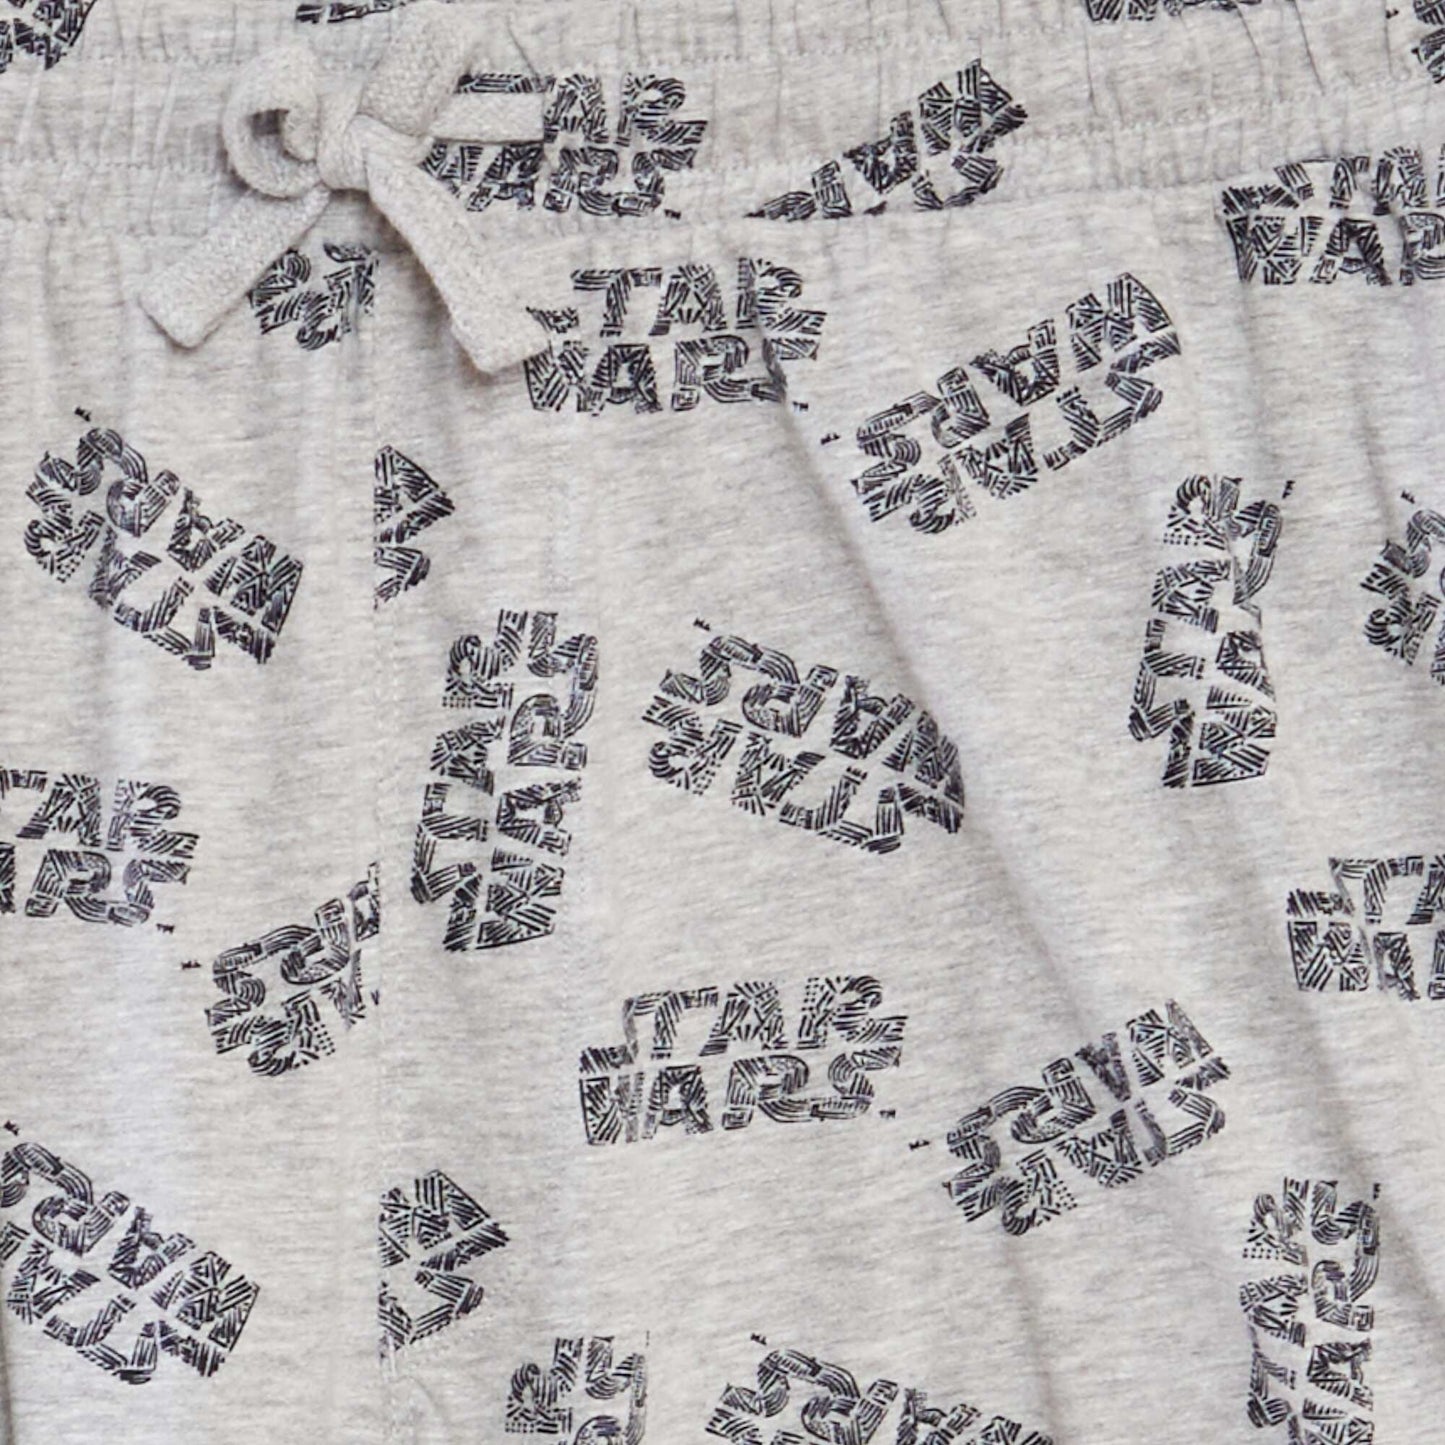 Cropped Star Wars pyjama set - 2-piece set GREY